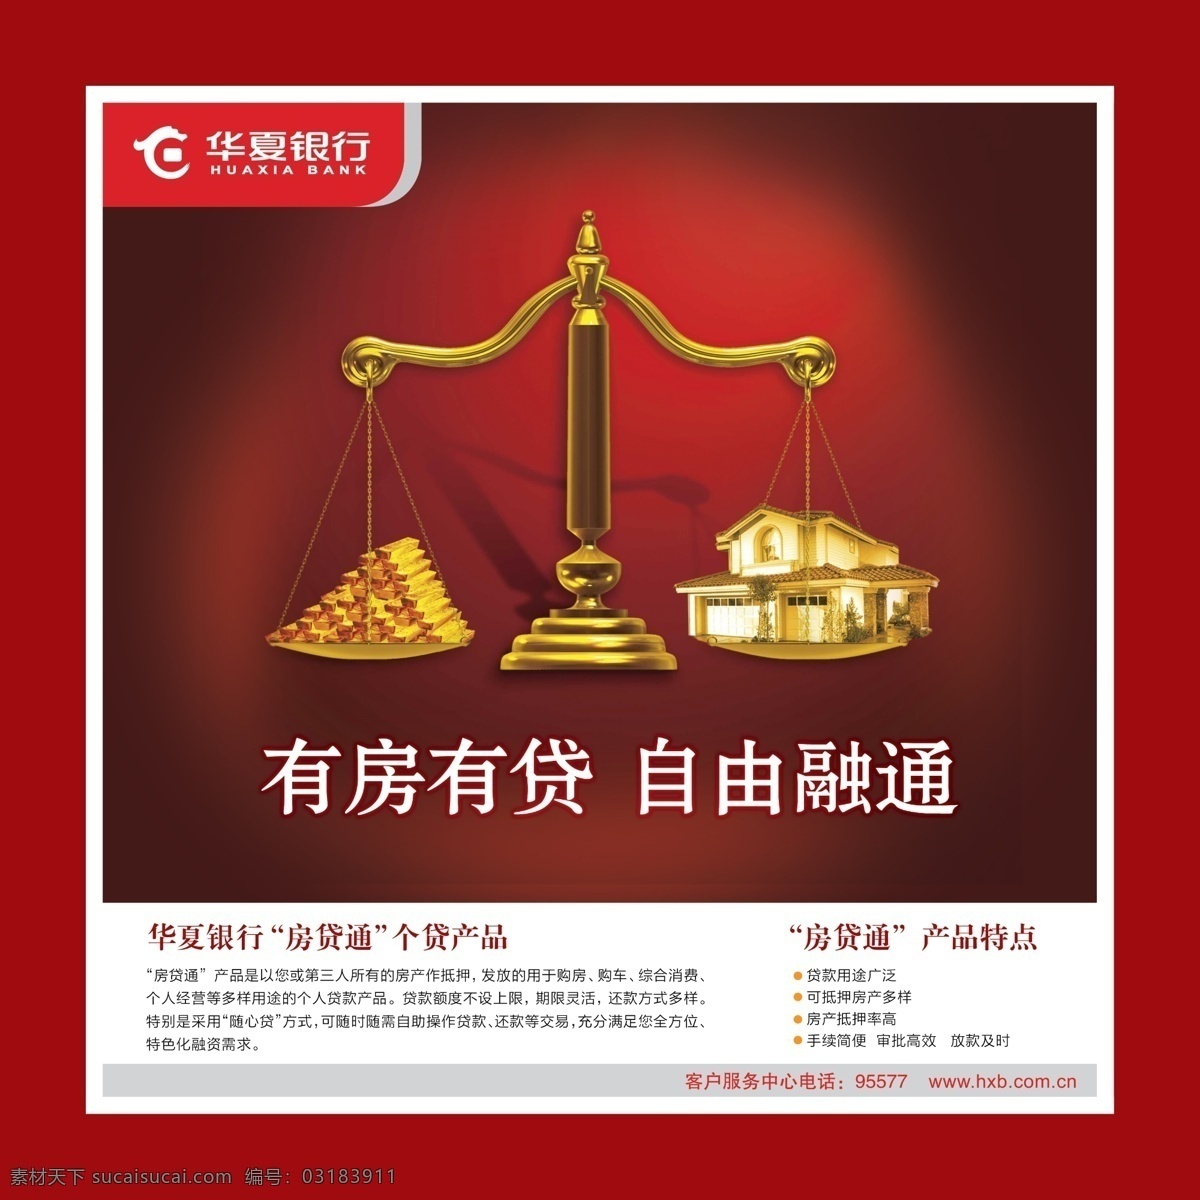 华夏银行海报 华夏银行 银行卡 有房 有贷 融通 华夏 天秤 广告设计模板 源文件 psd素材 红色